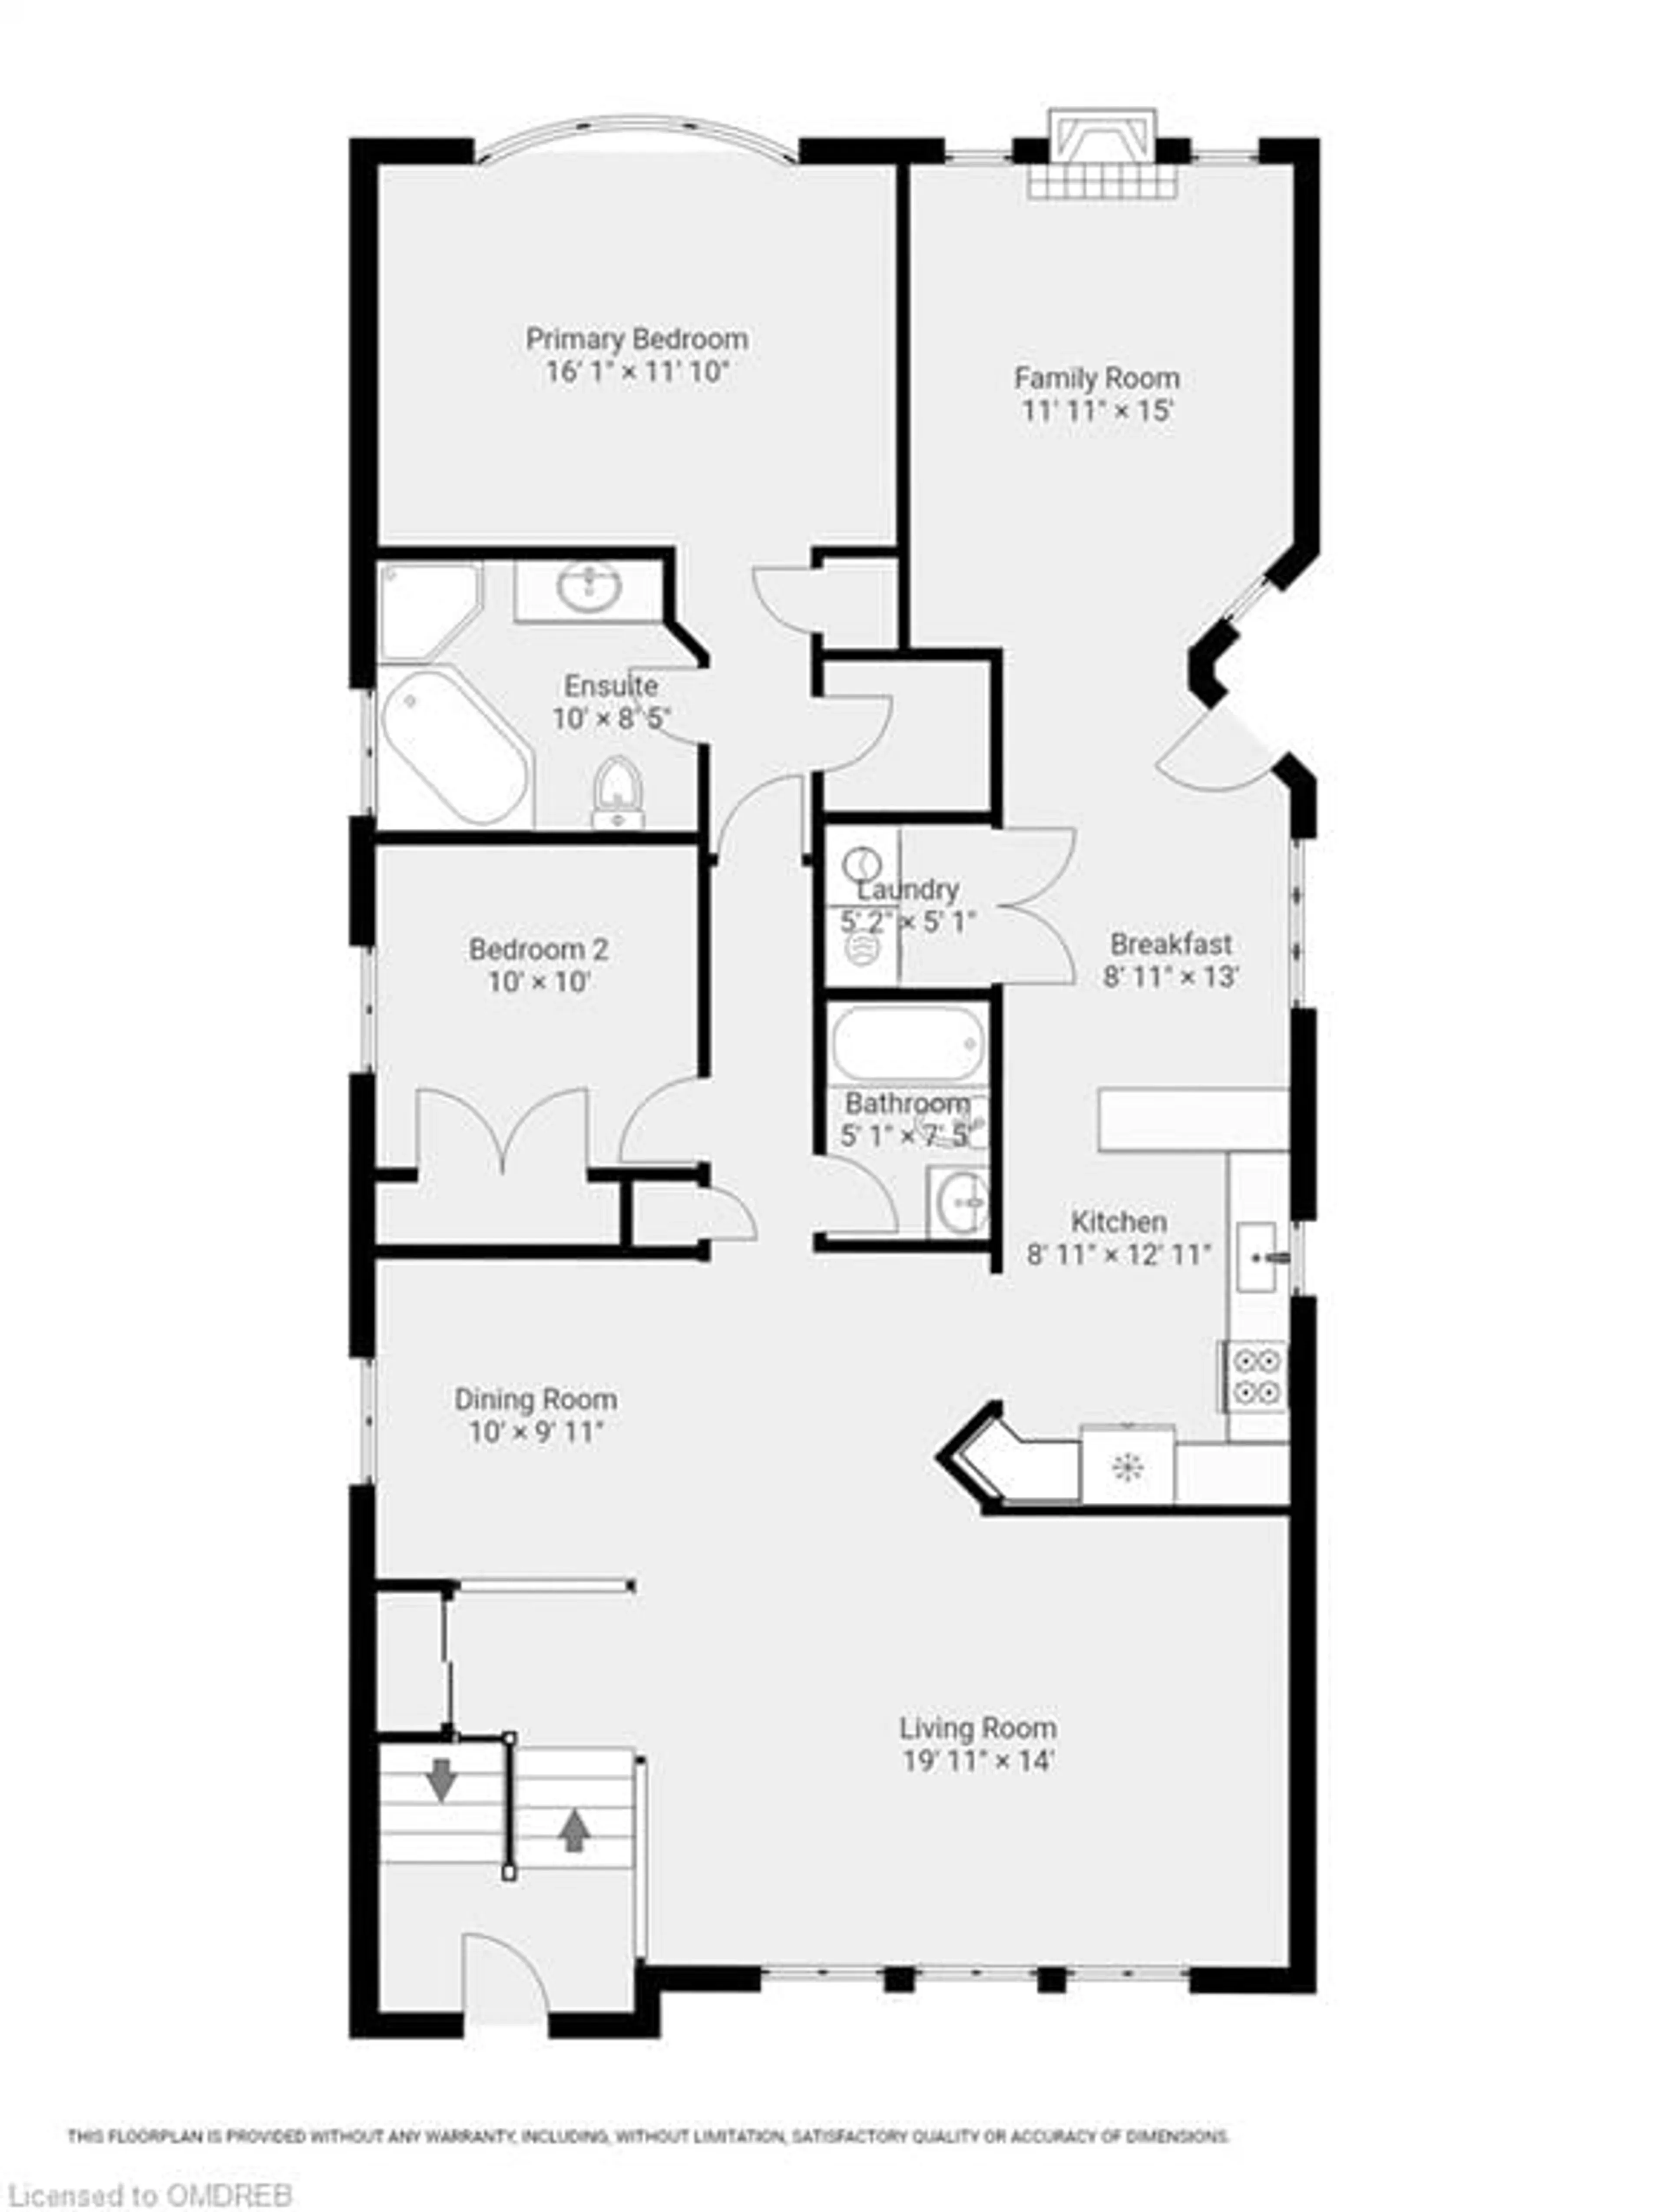 Floor plan for 1542 Sandpiper Rd, Oakville Ontario L6M 3R7